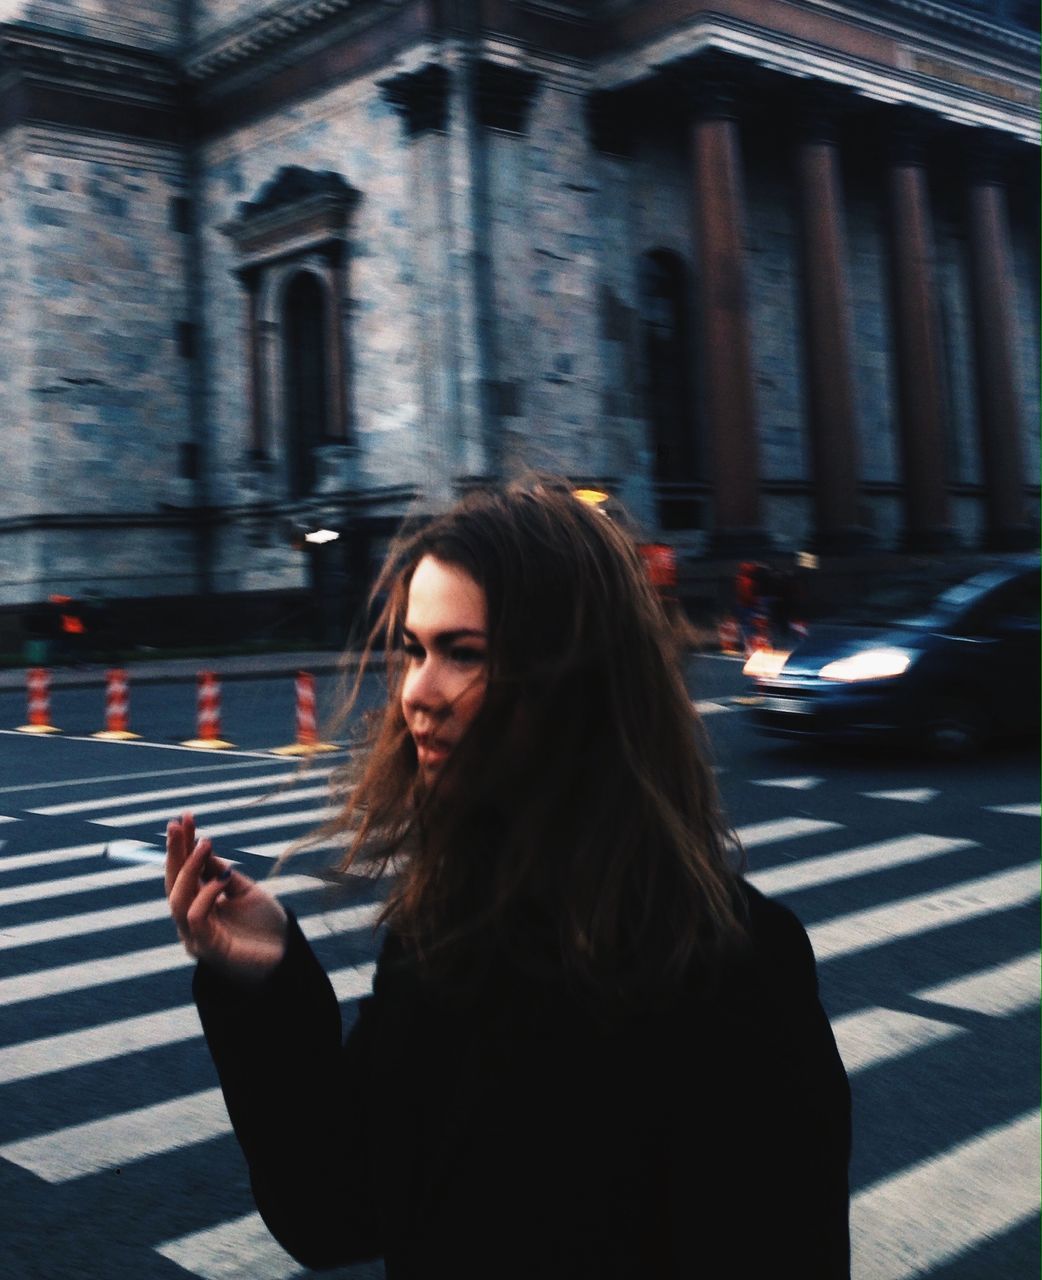 YOUNG WOMAN LOOKING AT ILLUMINATED CITY